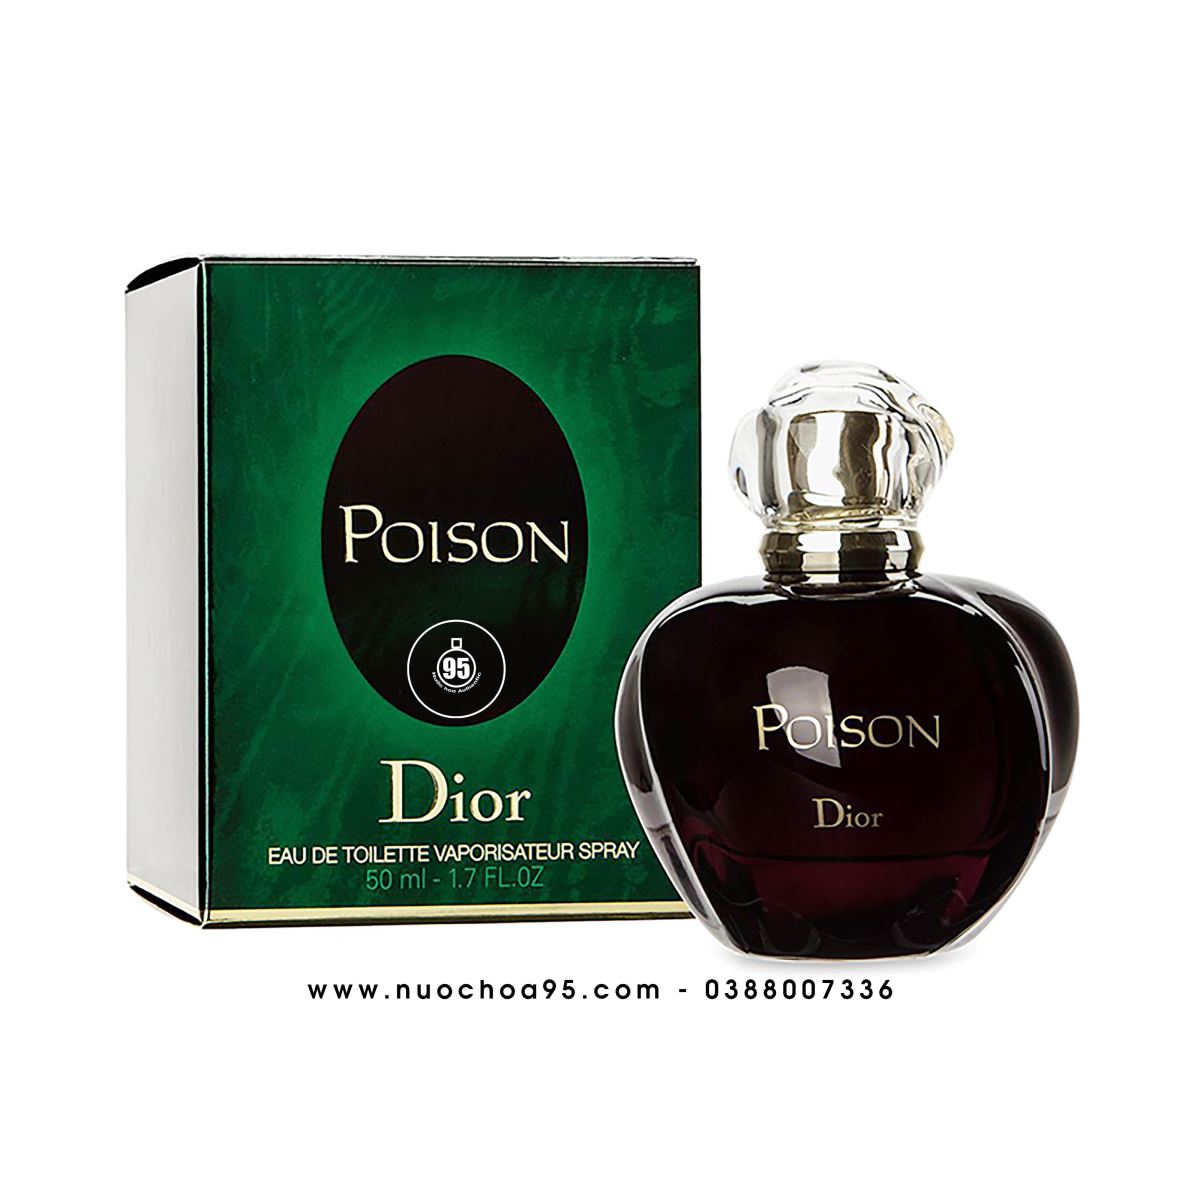 Nước Hoa Poison Girl Dior For Women Cho Nữ  Theperfumevn